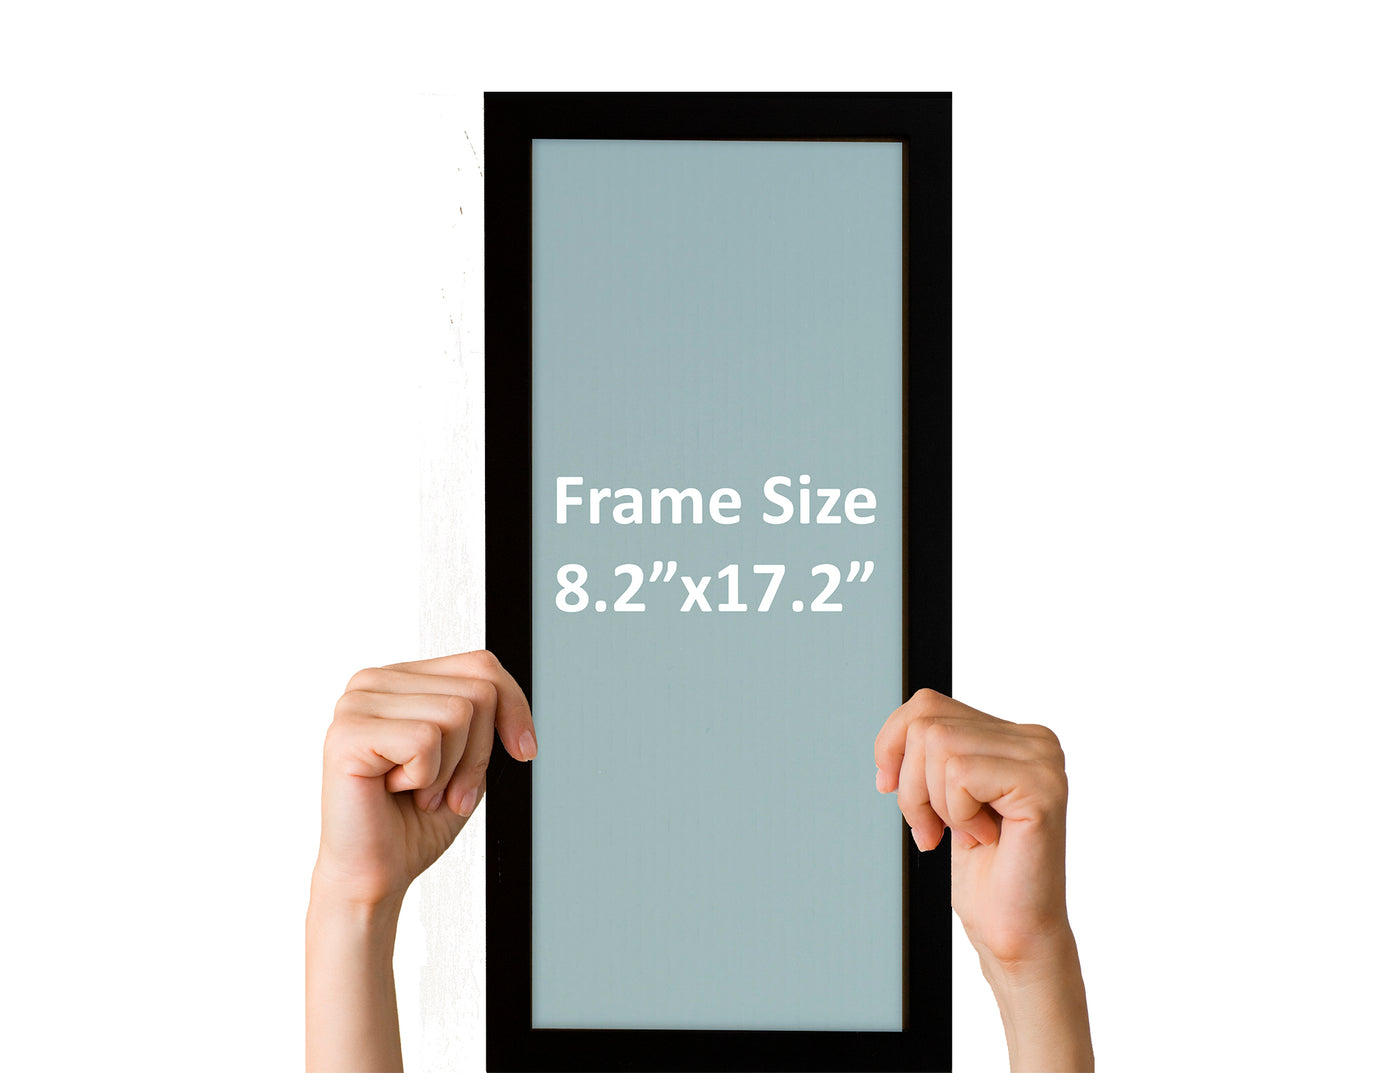 frame size illustration